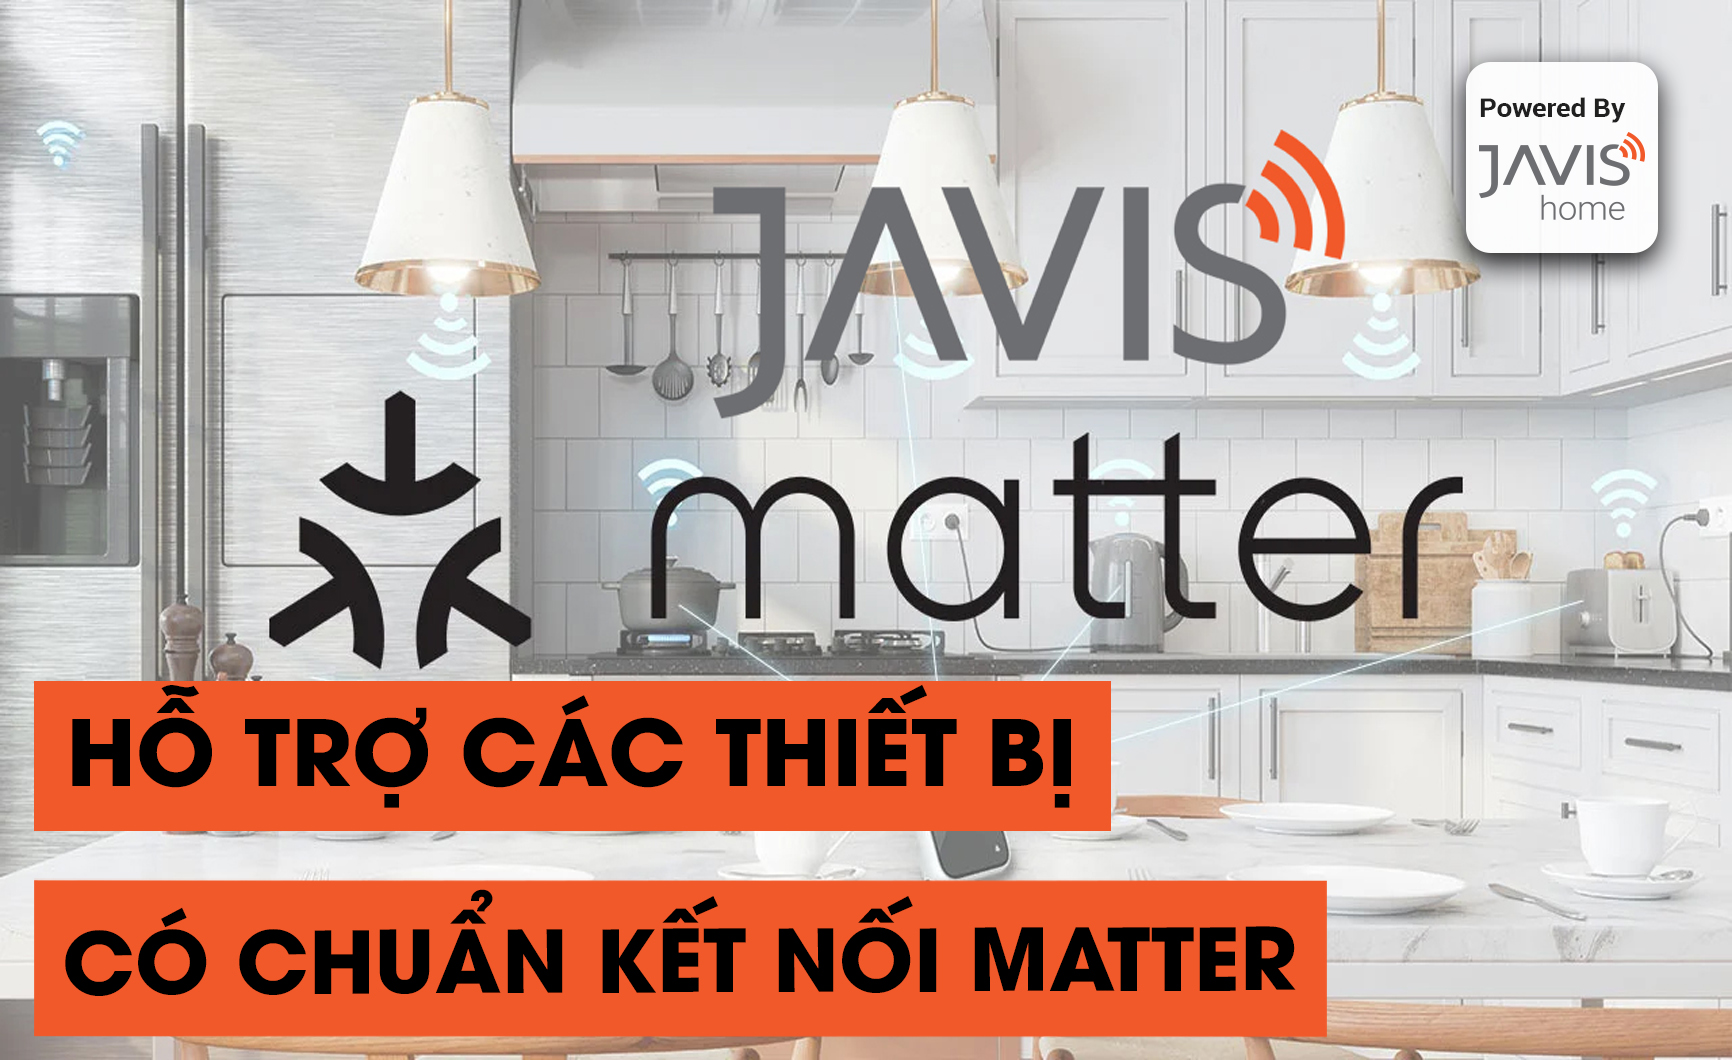 Javis tích hợp các thiết bị theo chuẩn Martter đầu tiên tại Việt Nam